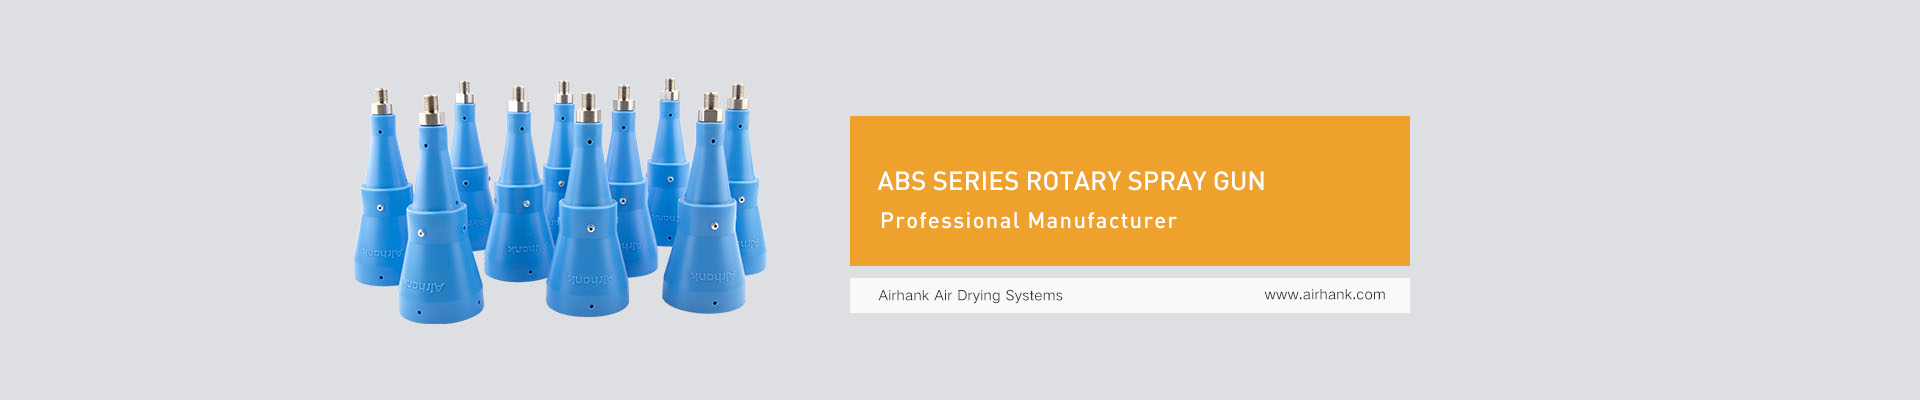 Airhank ABS series rotary spray gun